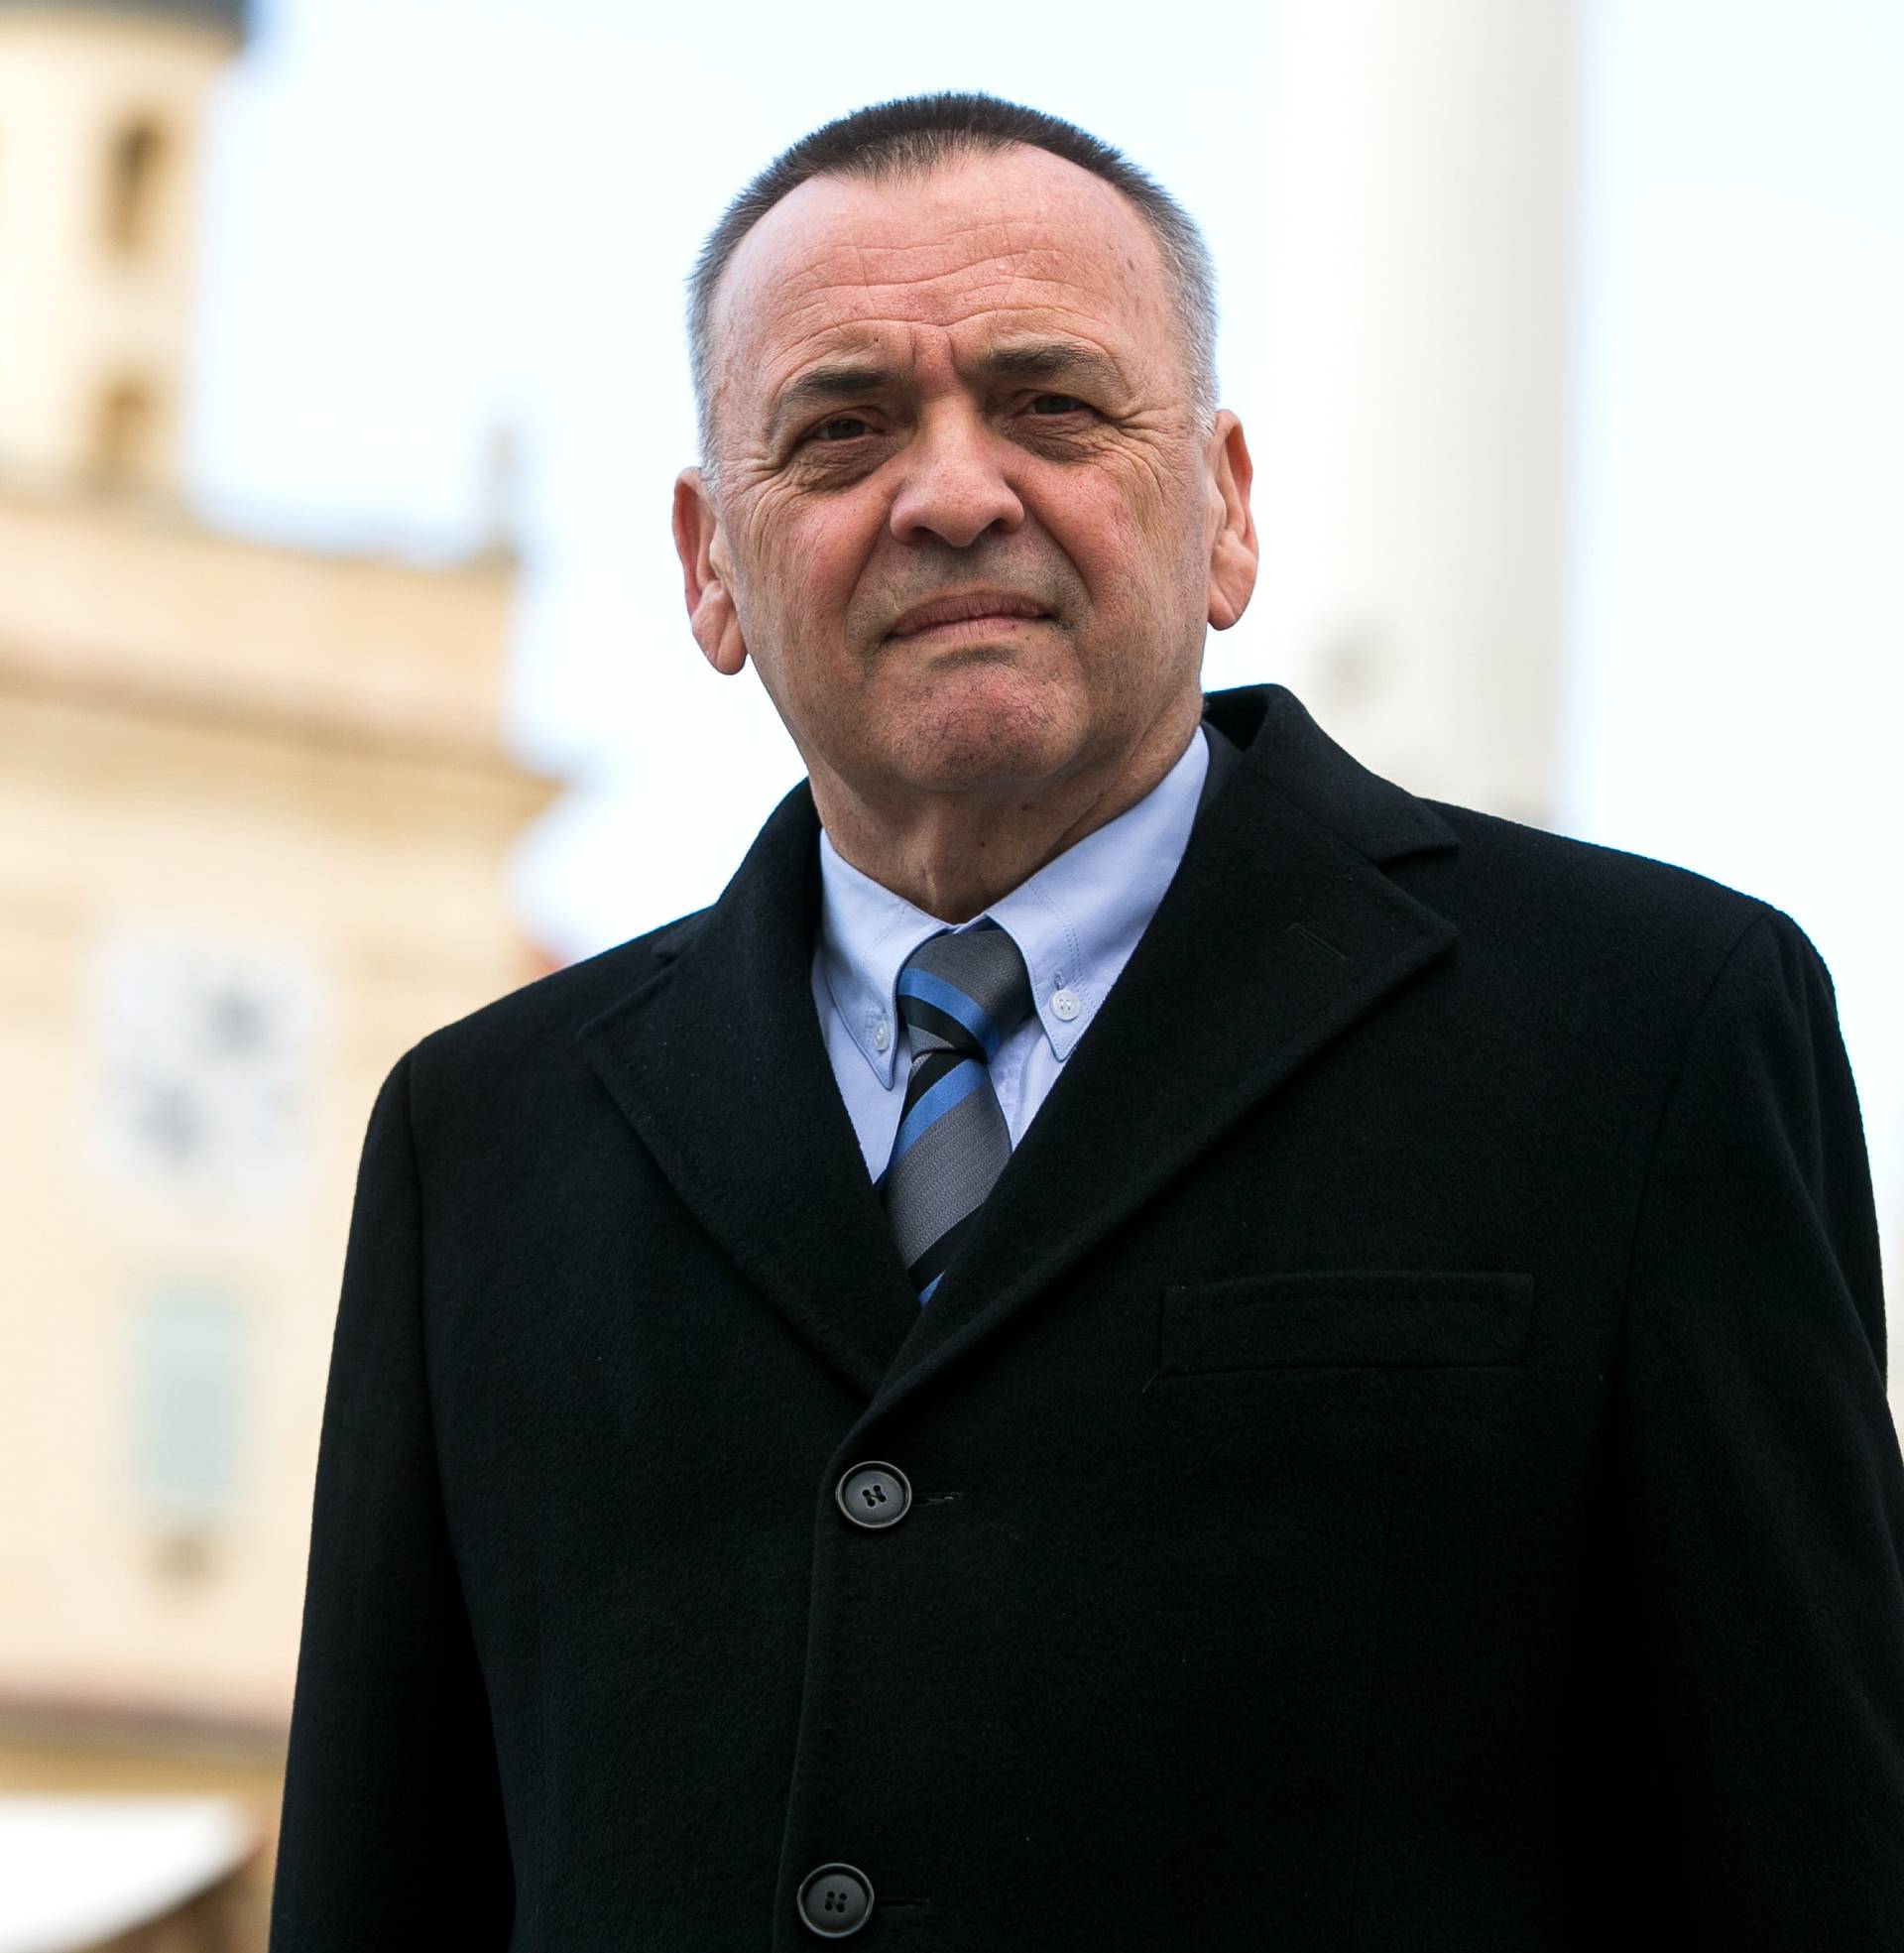 Osječki gradonačelnik Vrkić u bolnici: Ugradili mu stentove